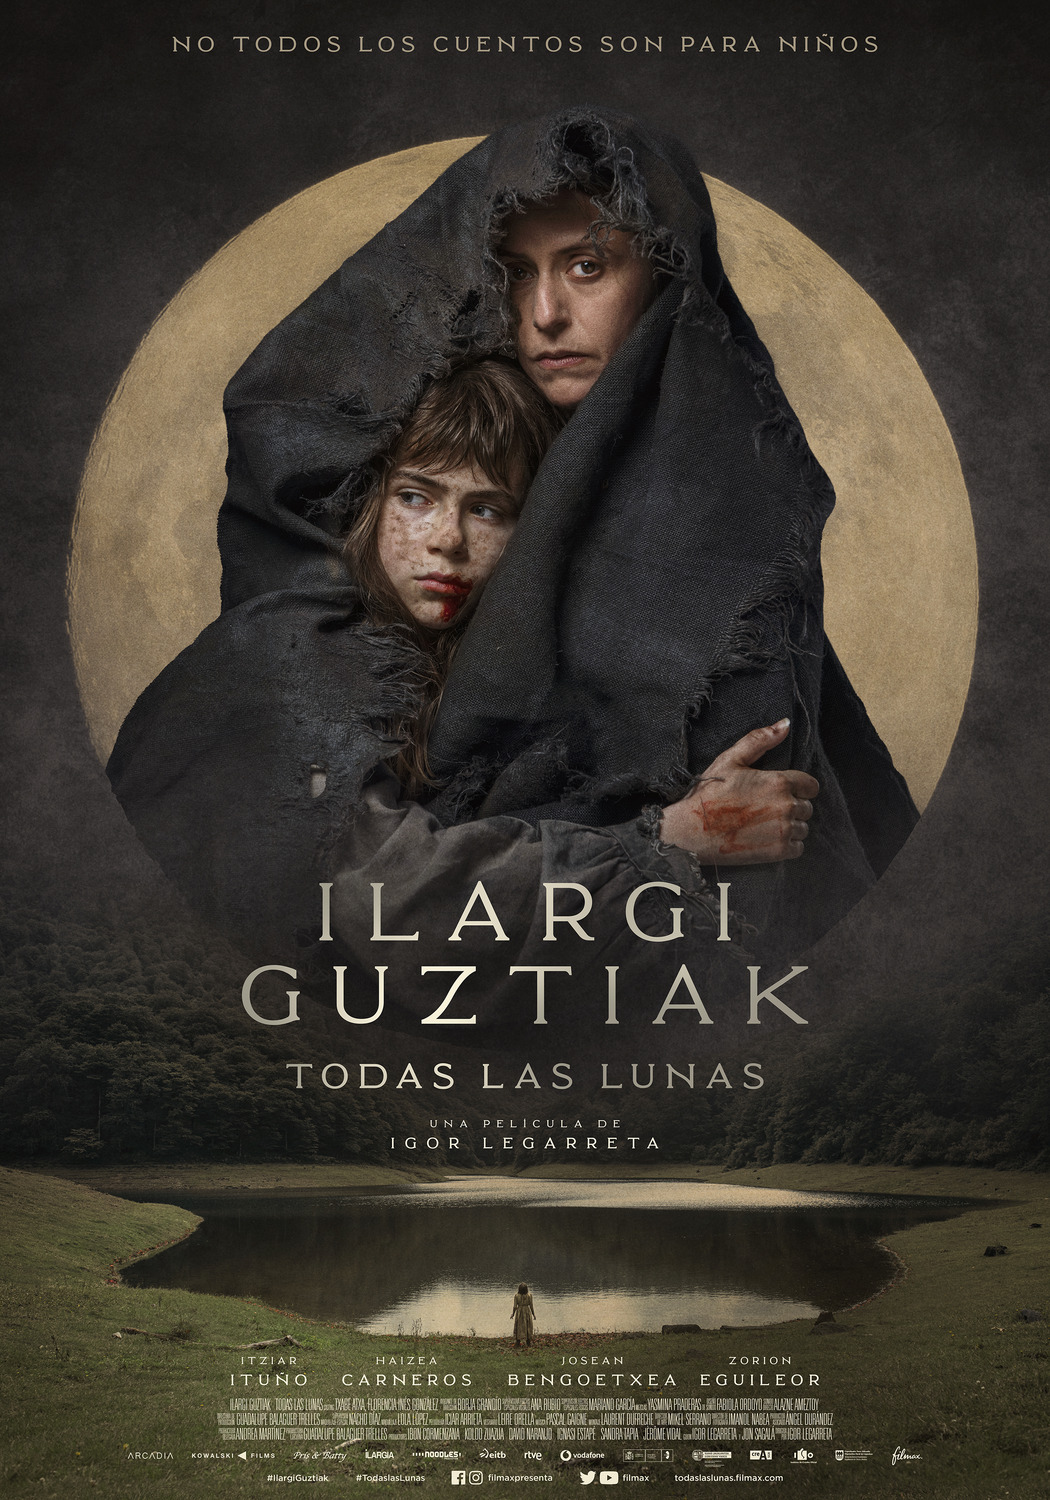 Extra Large Movie Poster Image for Ilargi Guztiak (#2 of 2)